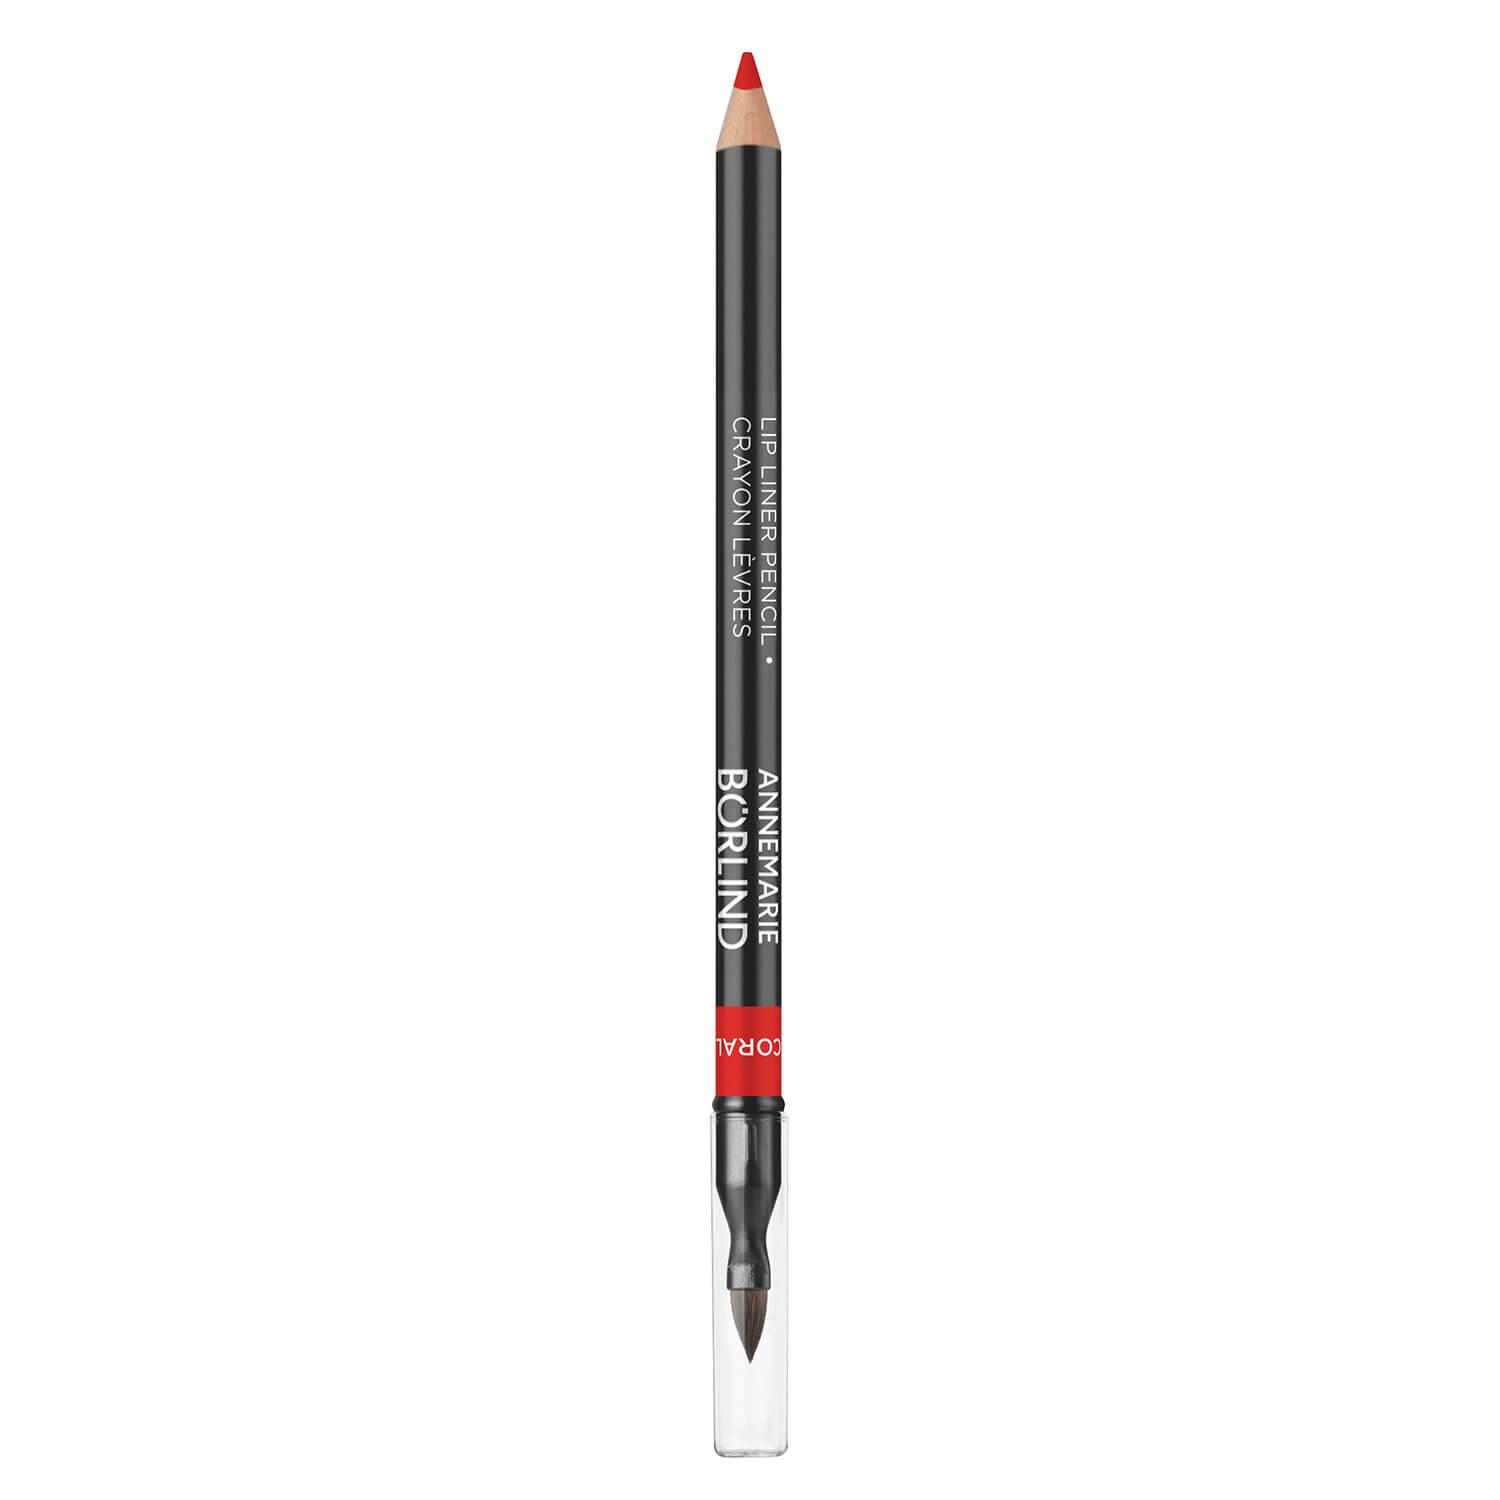 Annemarie Börlind Lips - Lip Liner Pencil Coral